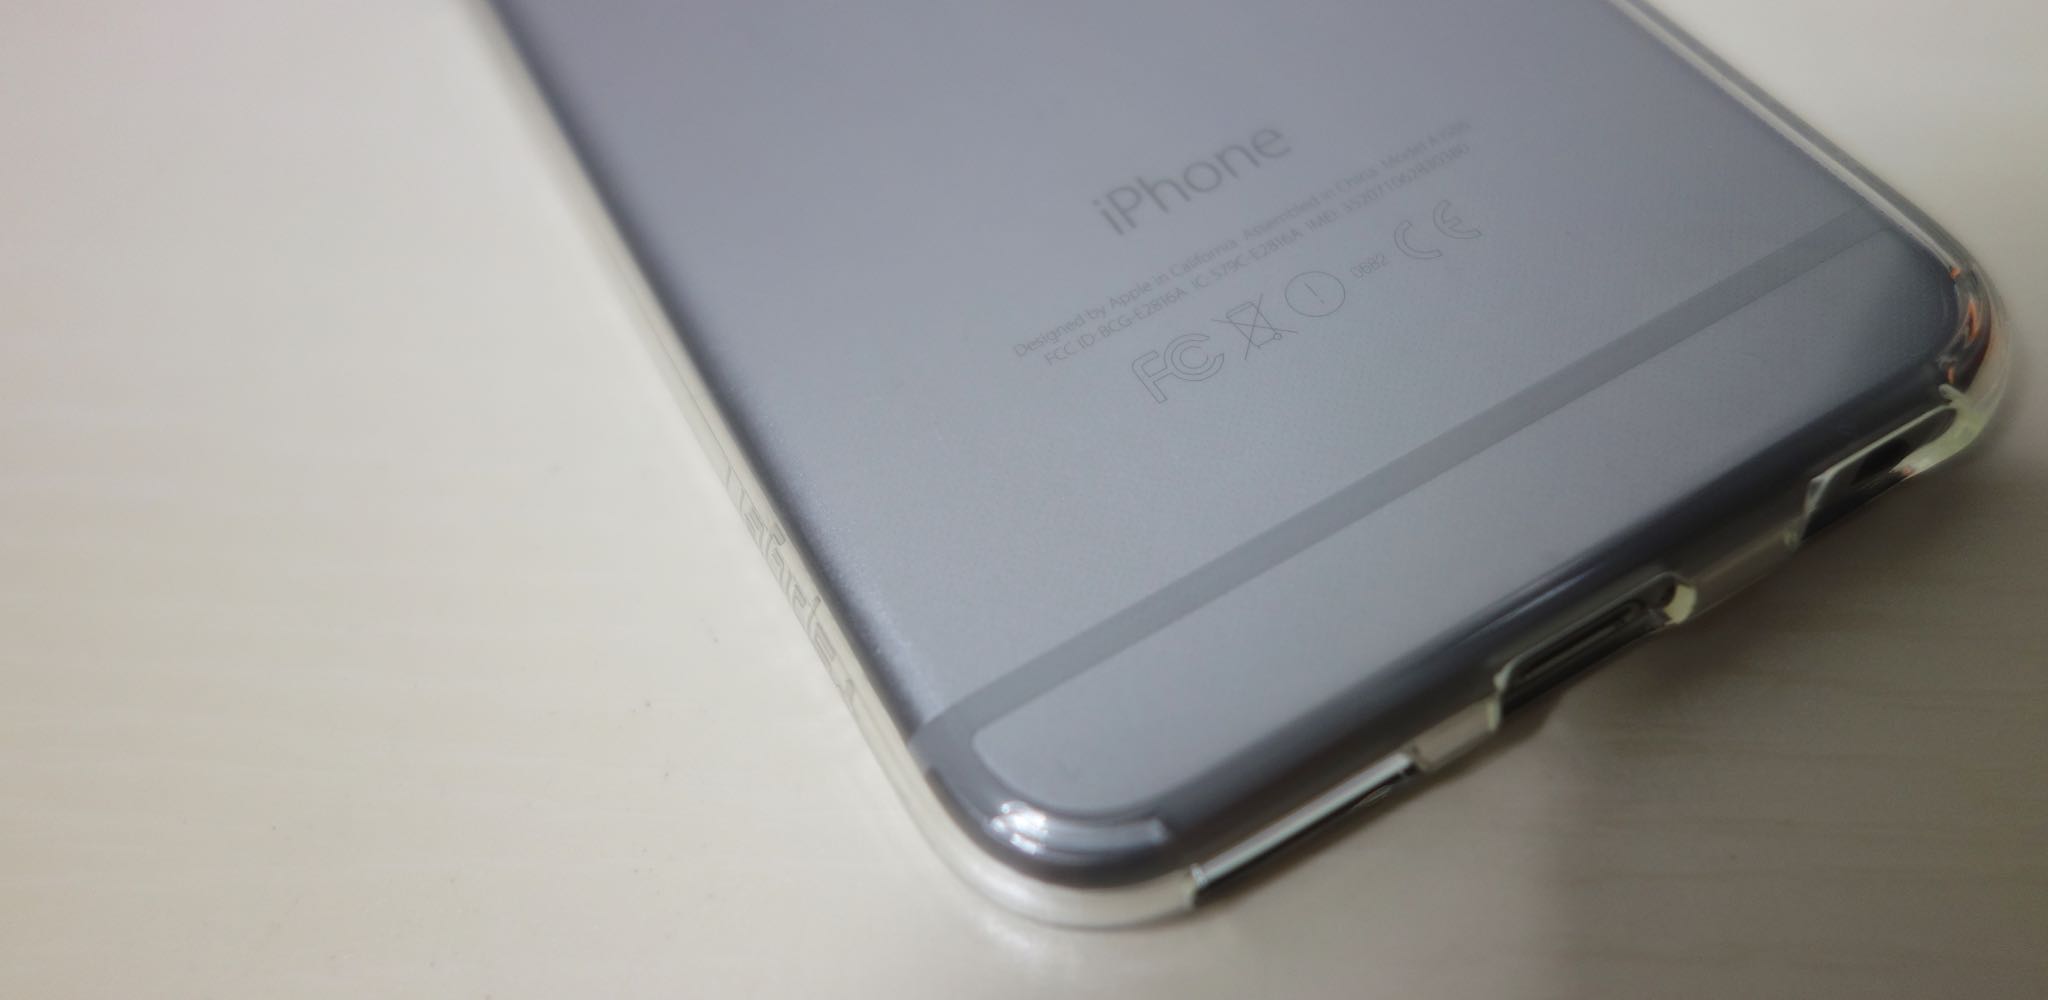 990円で購入可能なiPhone 6s用クリアケース「リキッド・クリスタル」を試す | ガジェットショット